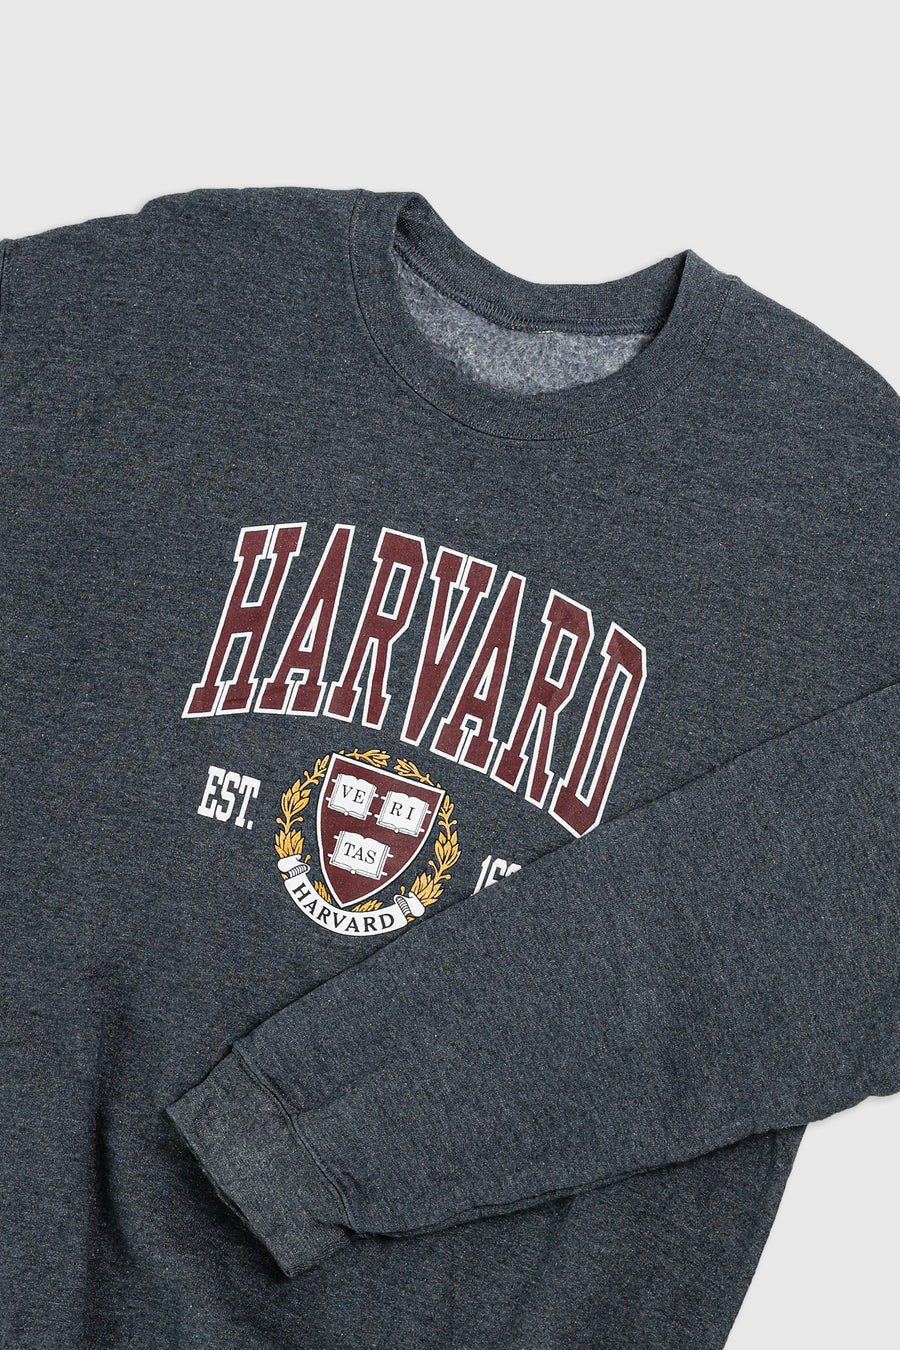 Vintage Harvard Sweatshirt - M